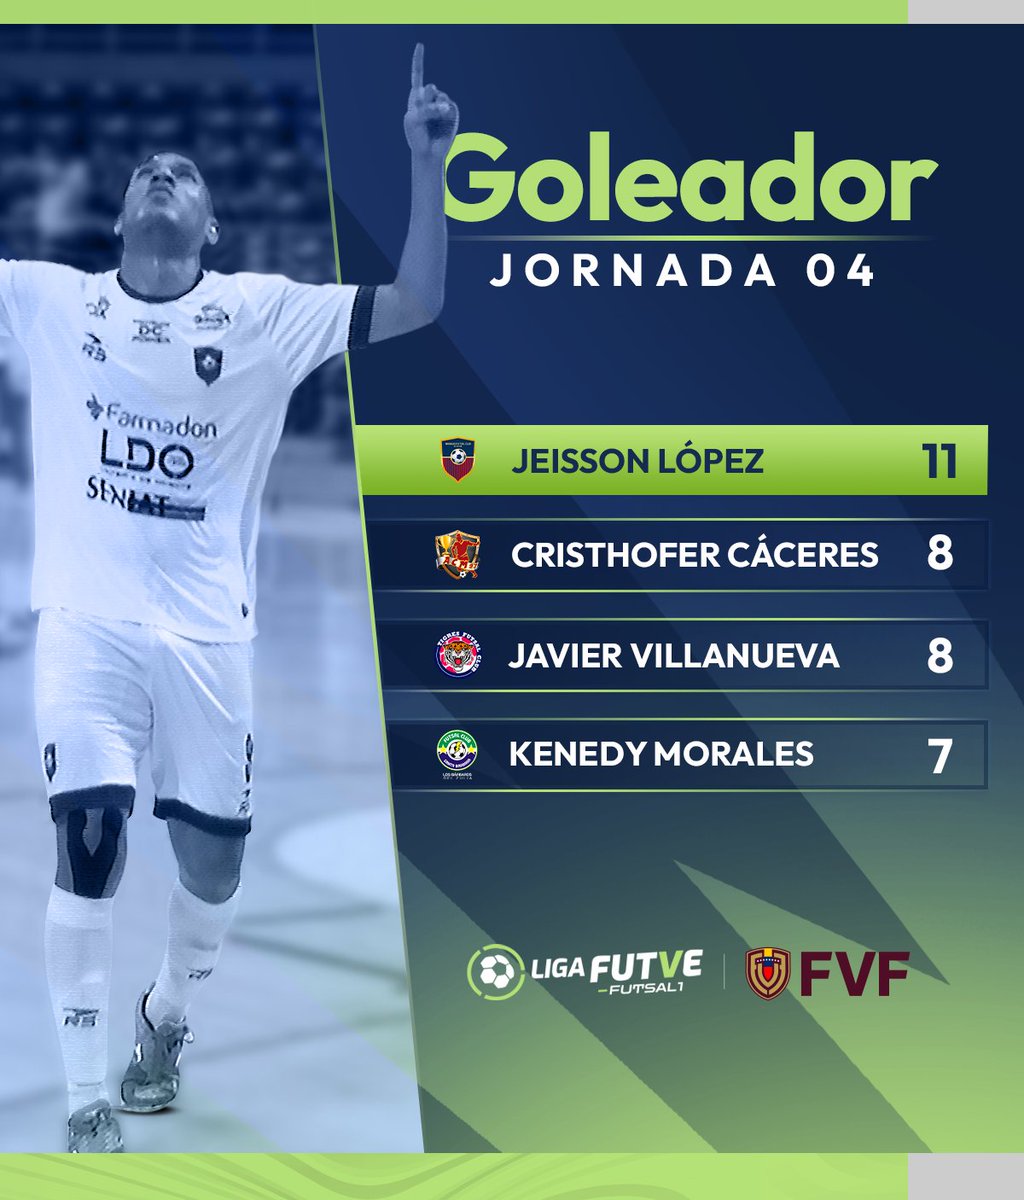 ⚽ Finalizada la cuarta jornada, estos son los máximos goleadores del 𝐓𝐨𝐫𝐧𝐞𝐨 𝐀𝐩𝐞𝐫𝐭𝐮𝐫𝐚 𝟐𝟎𝟐𝟒 en la #LigaFutveFutsal1 #TalentoDeCalle